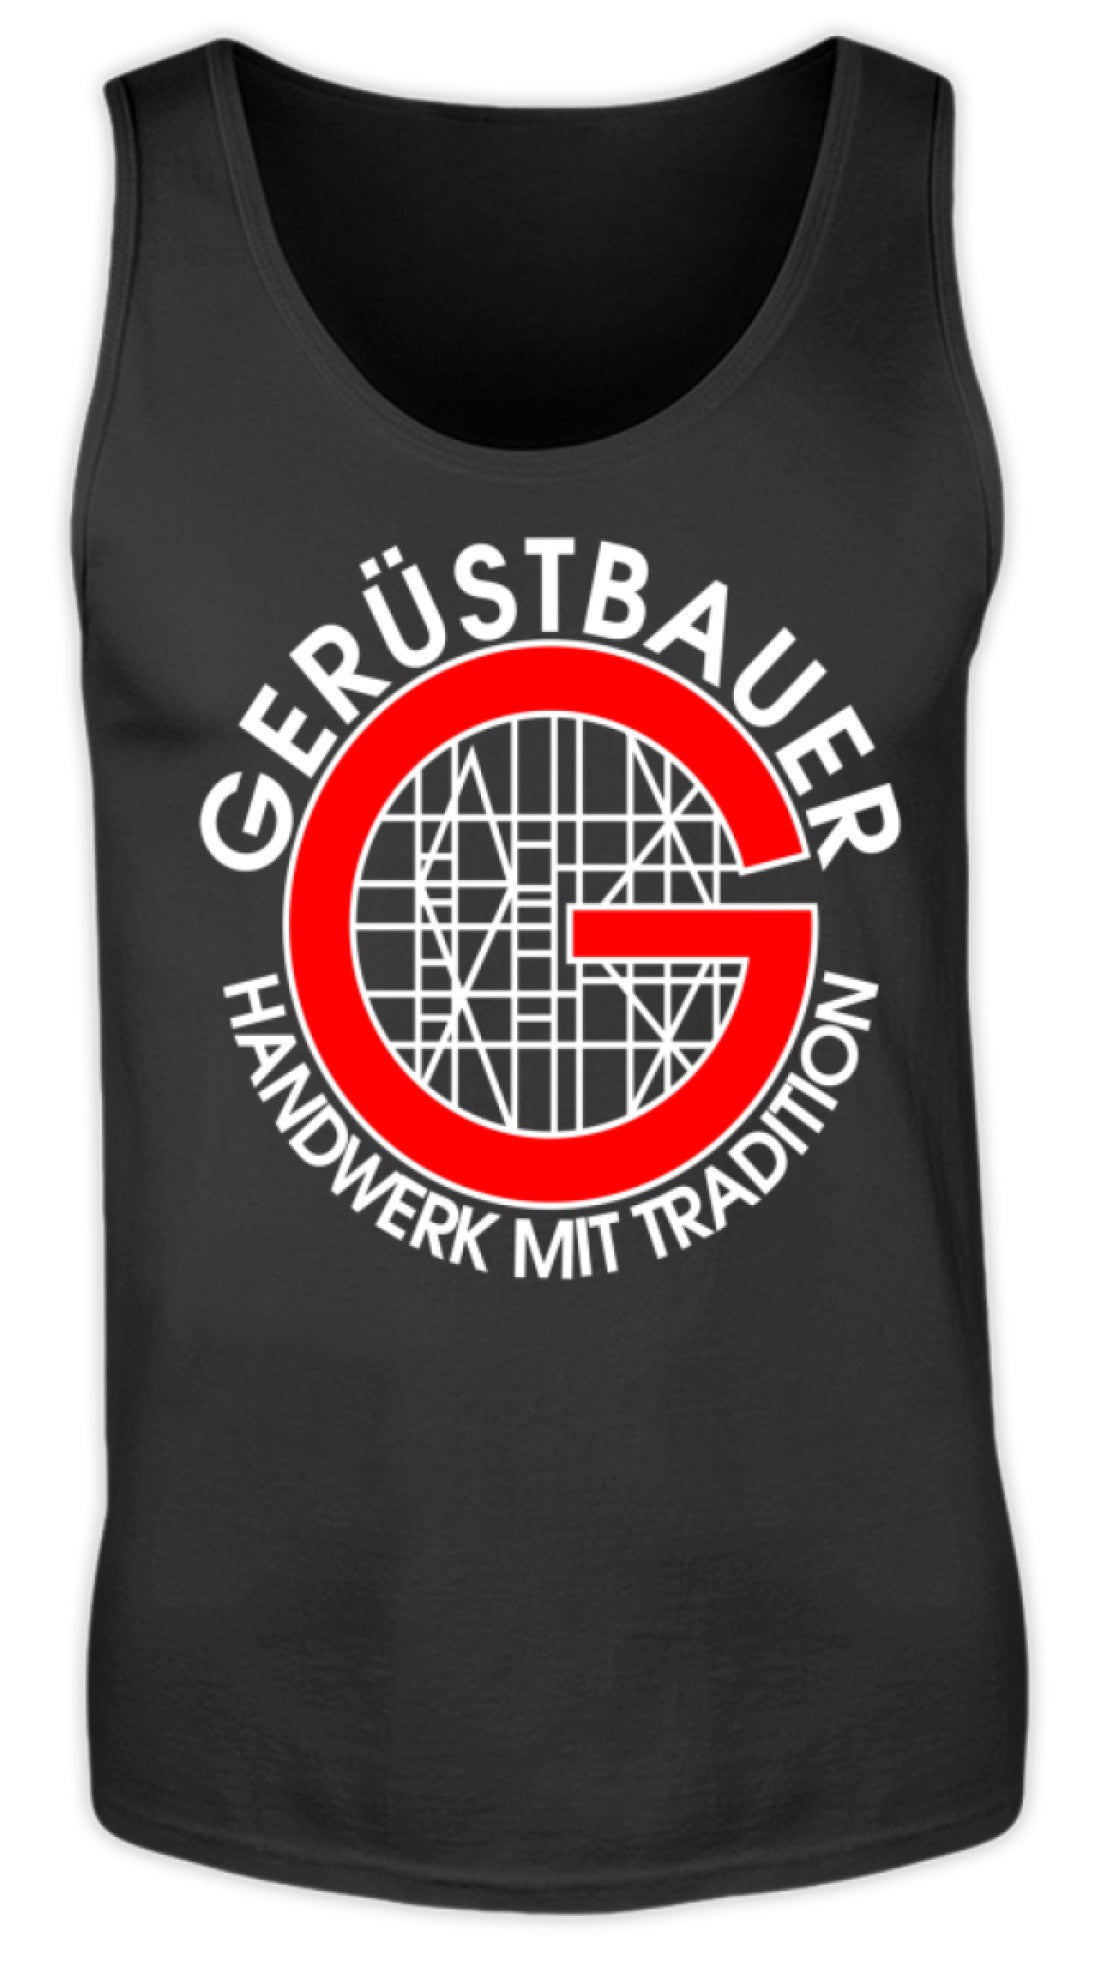 Gerüstbauer / Handwerk mit Tradition  - Herren Tanktop €19.95 Gerüstbauer - Shop >>